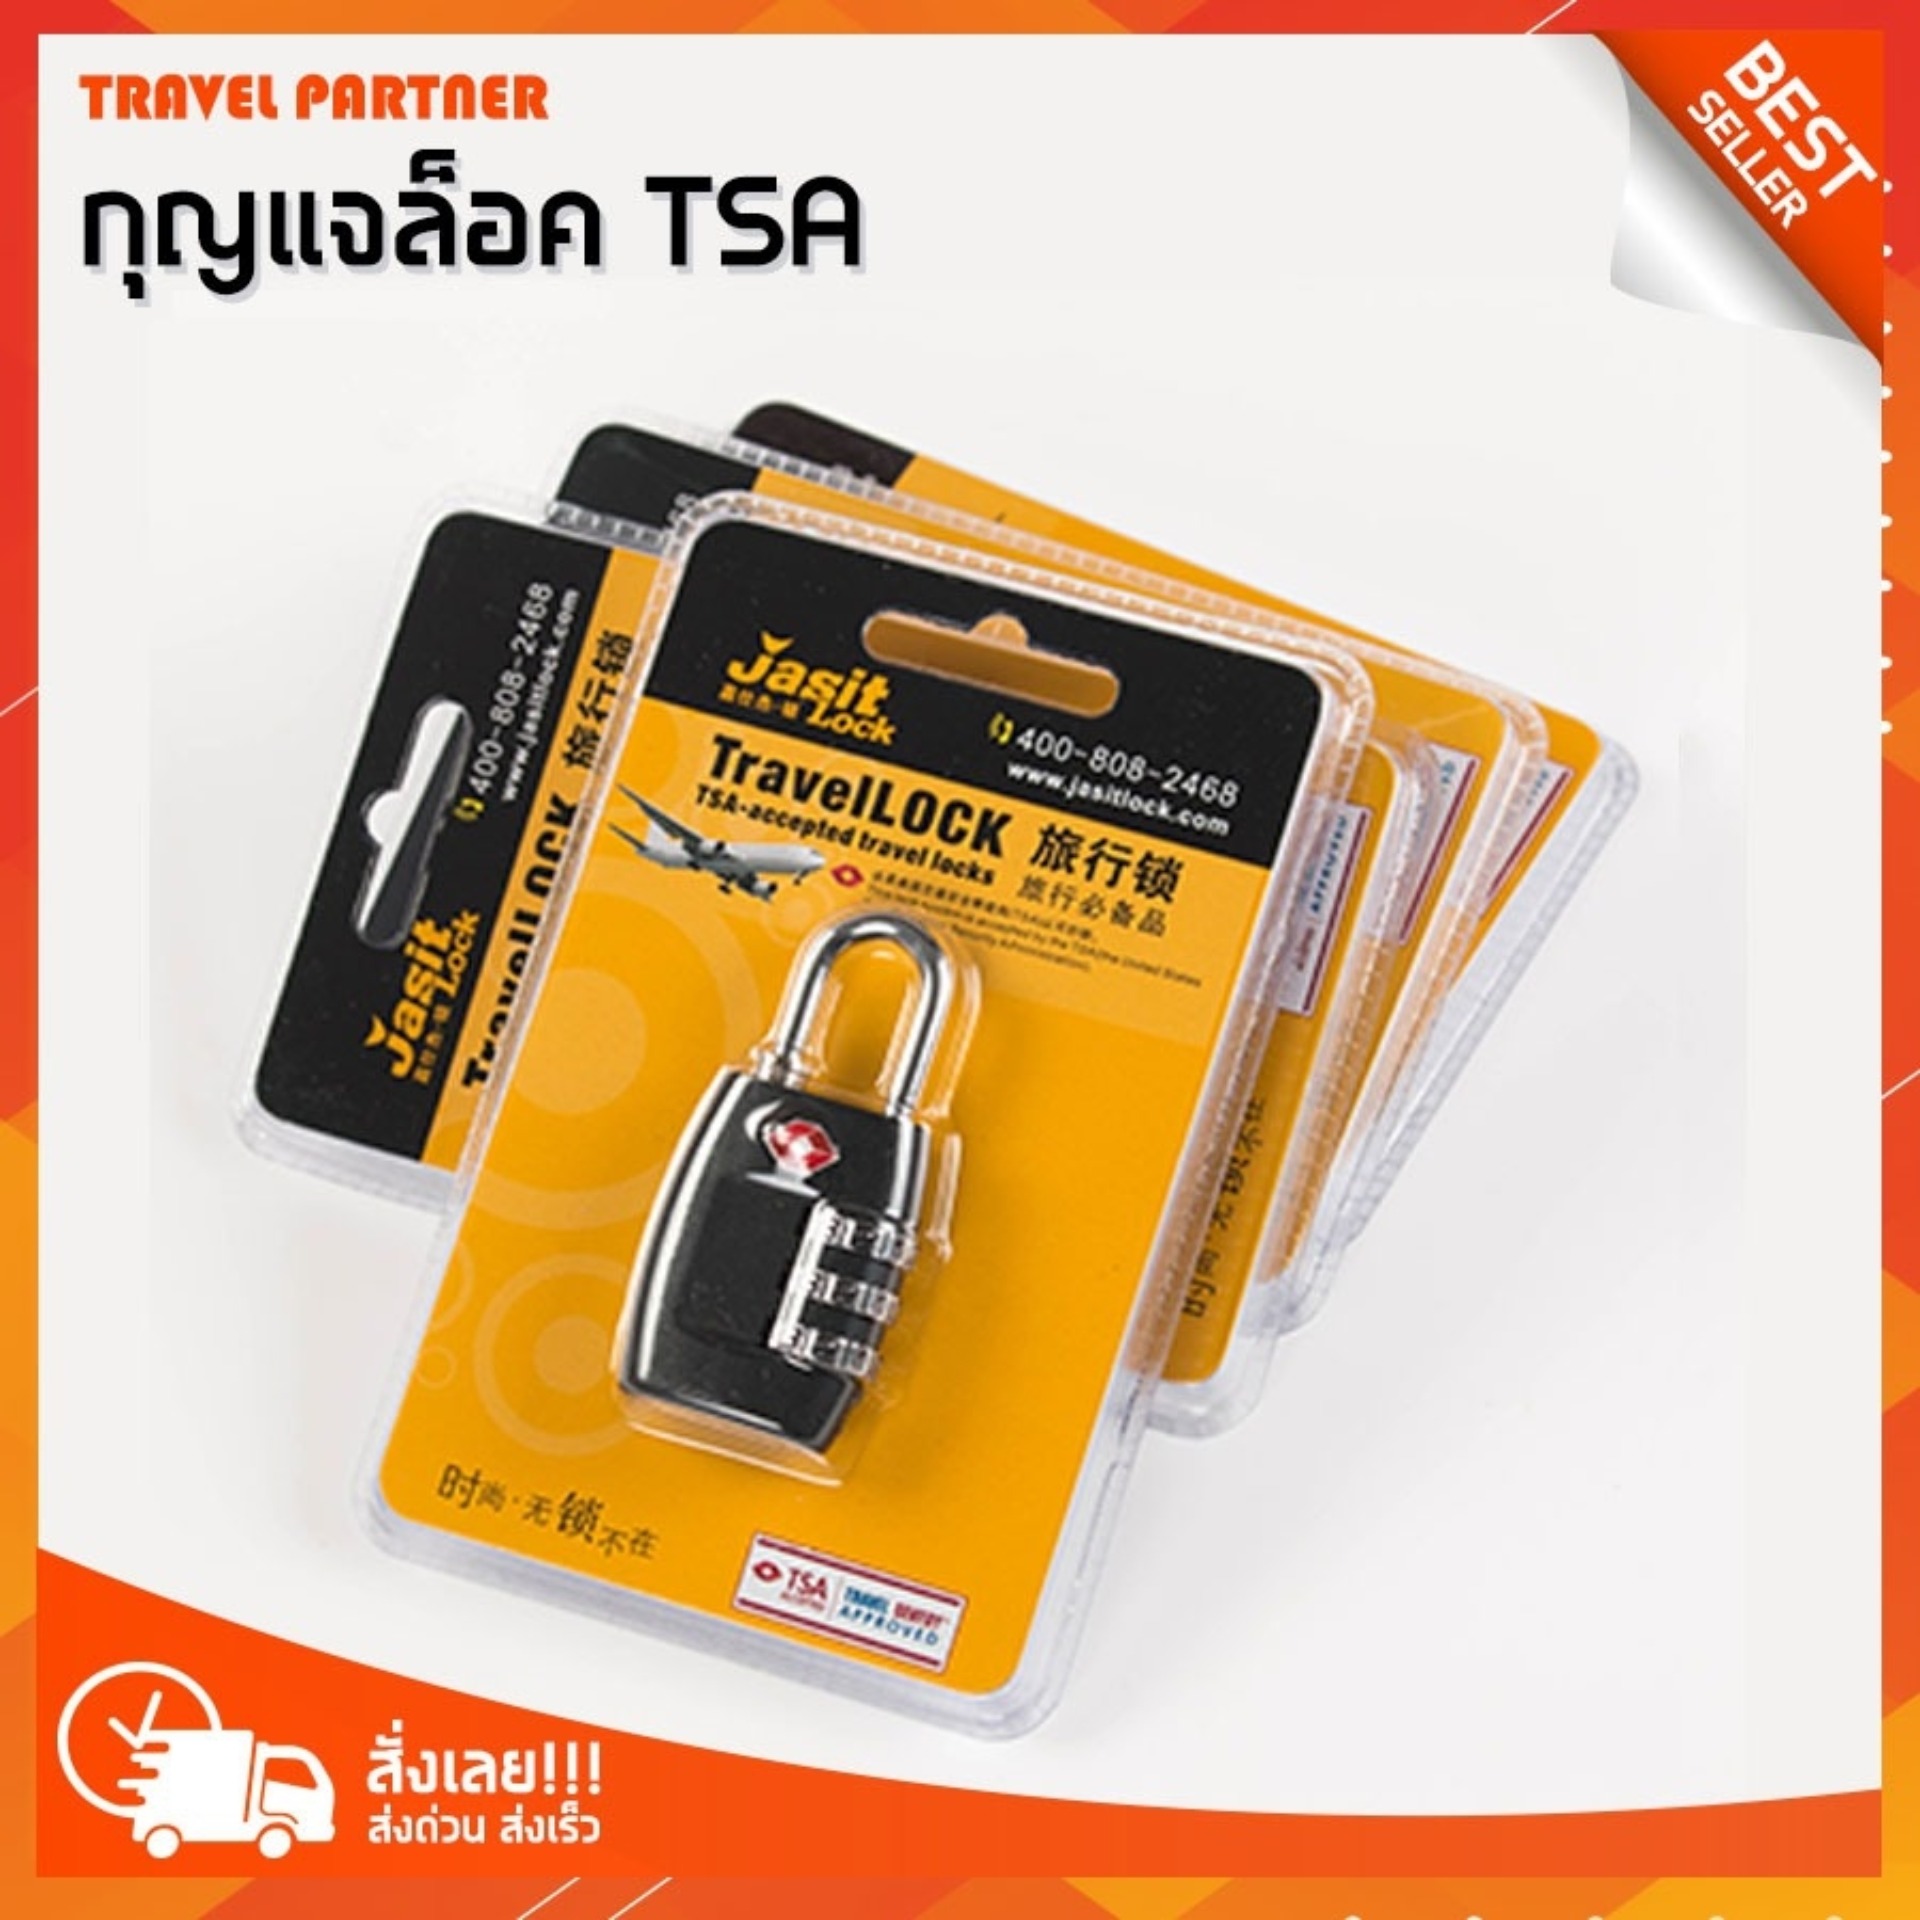 Travel Partner  กุญแจล็อครหัส 3 รหัส TravelLock  มาตรฐานระบบ TSA ล็อค กระเป๋าเดินทาง สินค้าใหม่!! ระบบล็อคแข็งแรงมาก บอดี้เป็น PC ห่วงกุญแจเป็นโลหะ ใช้งานง่าย